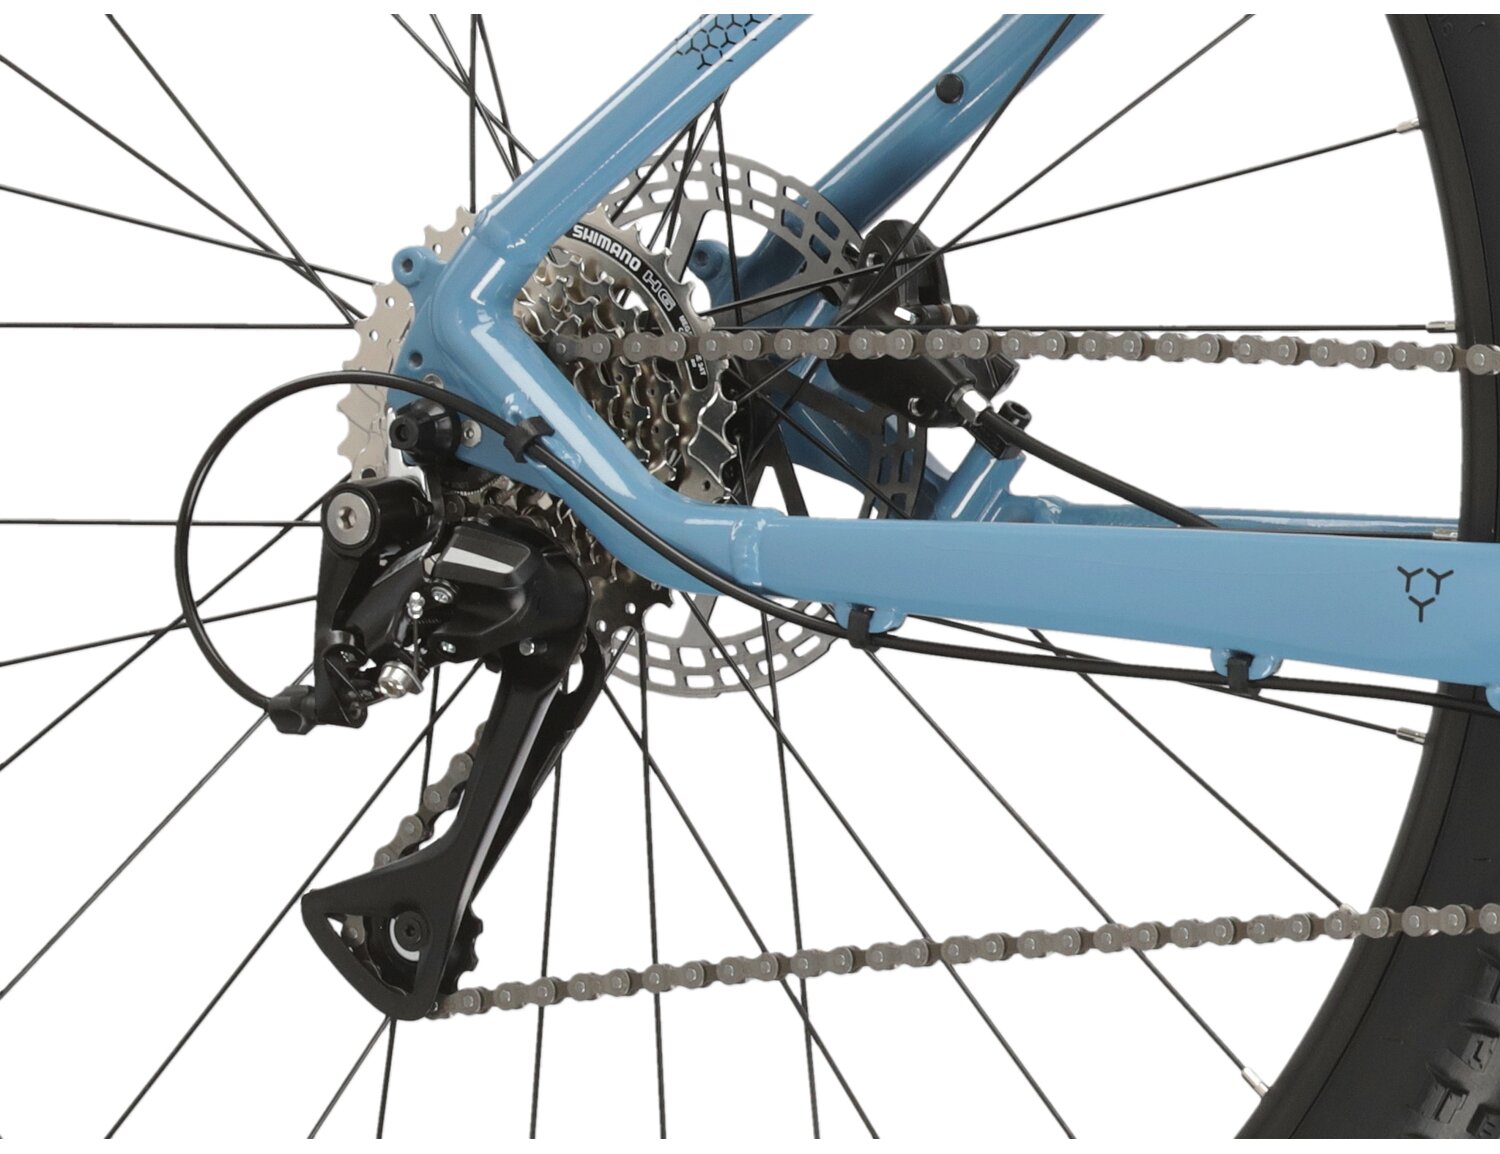  Tylna ośmiobiegowa przerzutka Shimano Acera RD M3020 oraz hydrauliczne hamulce tarczowe Shimano MT200 w rowerze górskim MTB KROSS Hexagon 4.0 